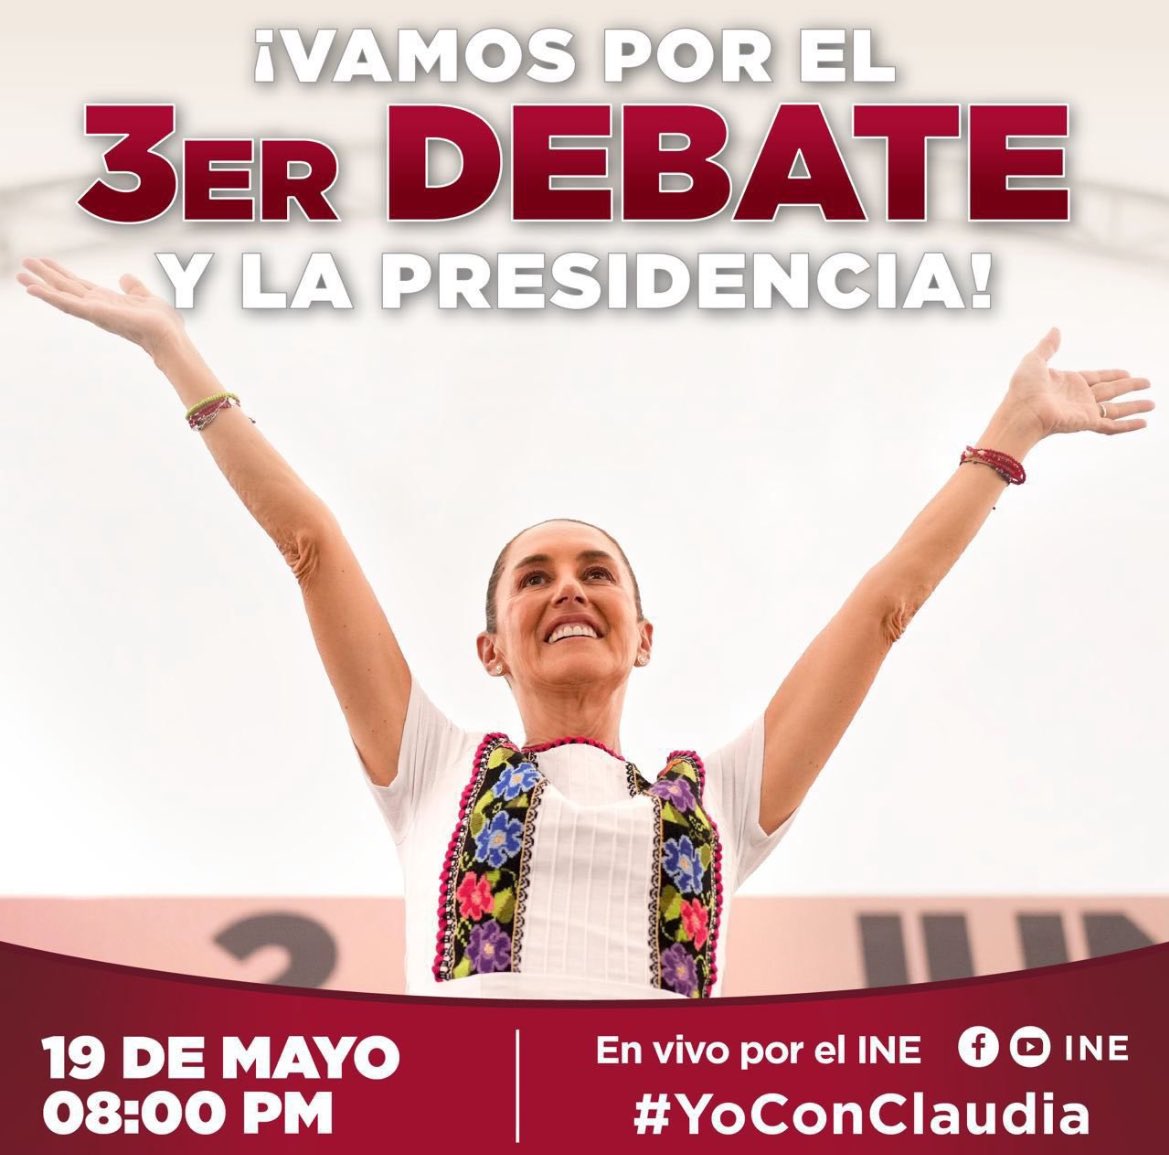 #HoyGanaClaudia y todo el pueblo de México♥️, vamos por más bienestar, vamos por más Morena ¡Con todo Presidenta @Claudiashein ! 
.
.
#YoConClaudia
#ClaudiaPresidenta
#VamosAGanar